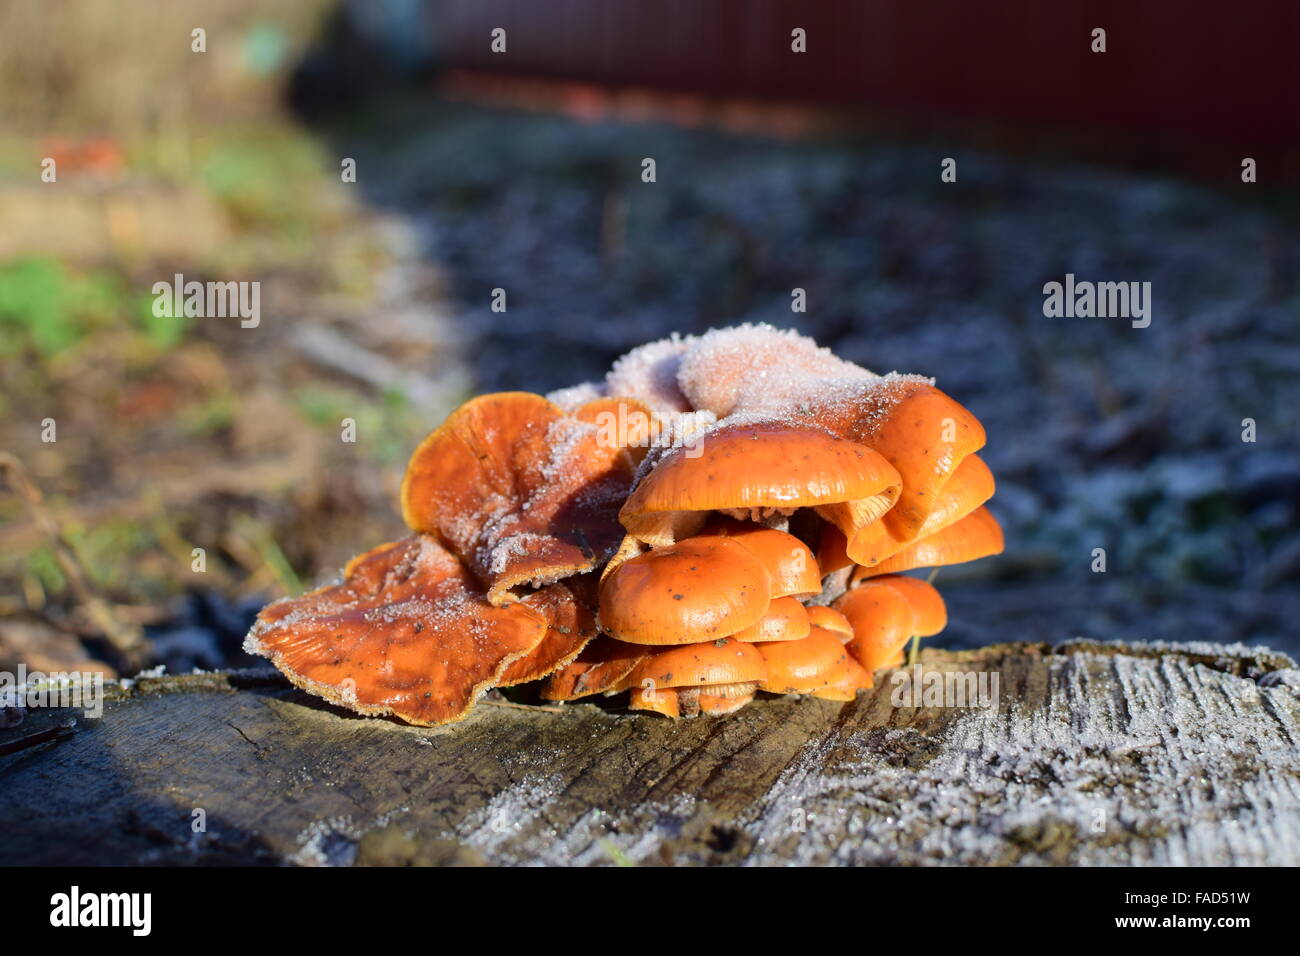 Orange mushrooms on a stub. New life on dead wood. Stock Photo